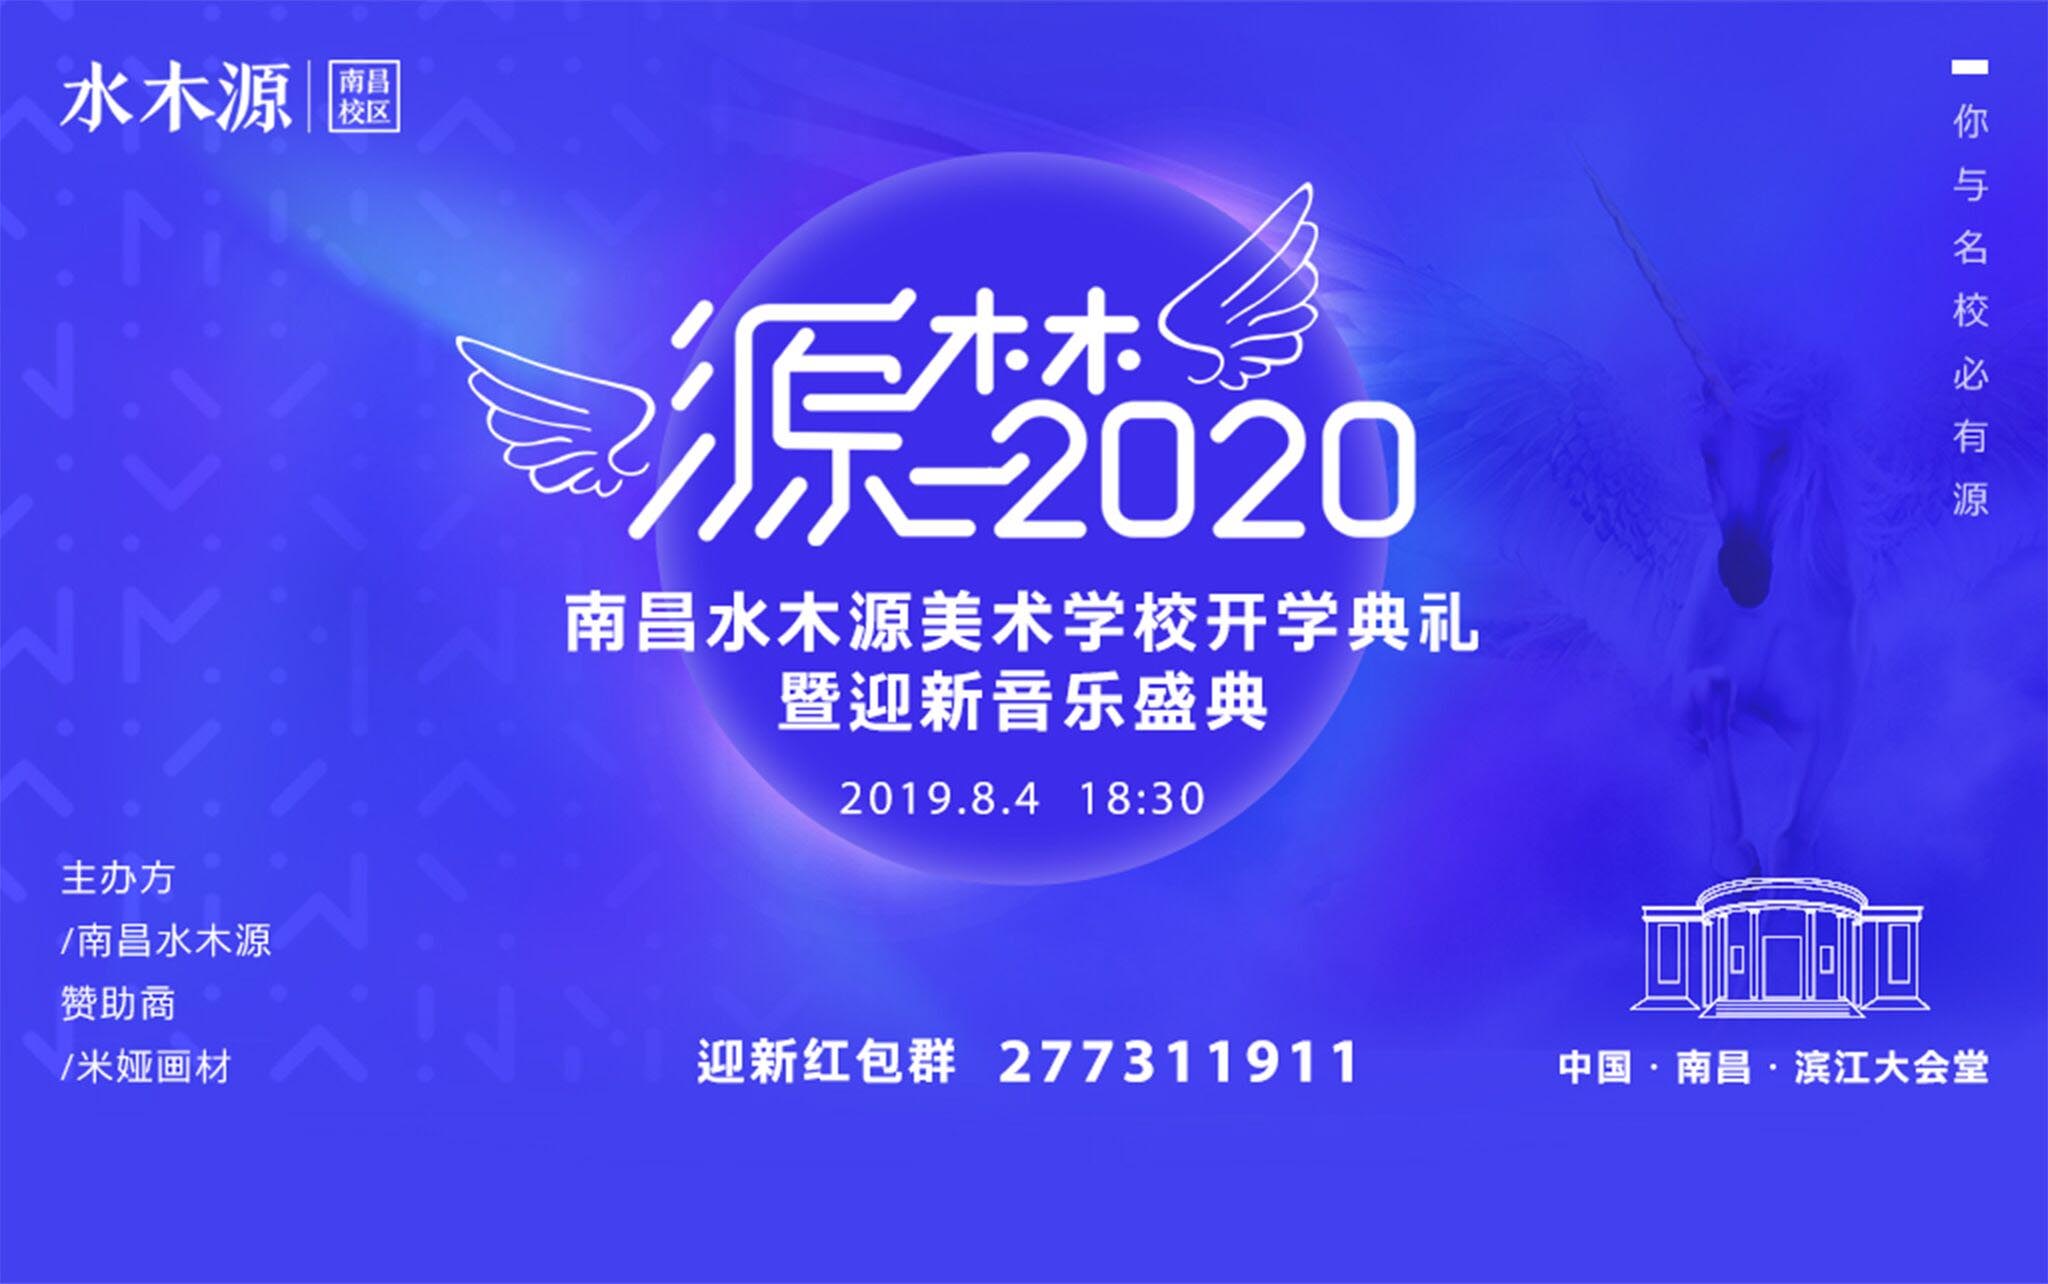 南昌水木源 -【源梦2020】- 开学典礼与迎新音乐盛典